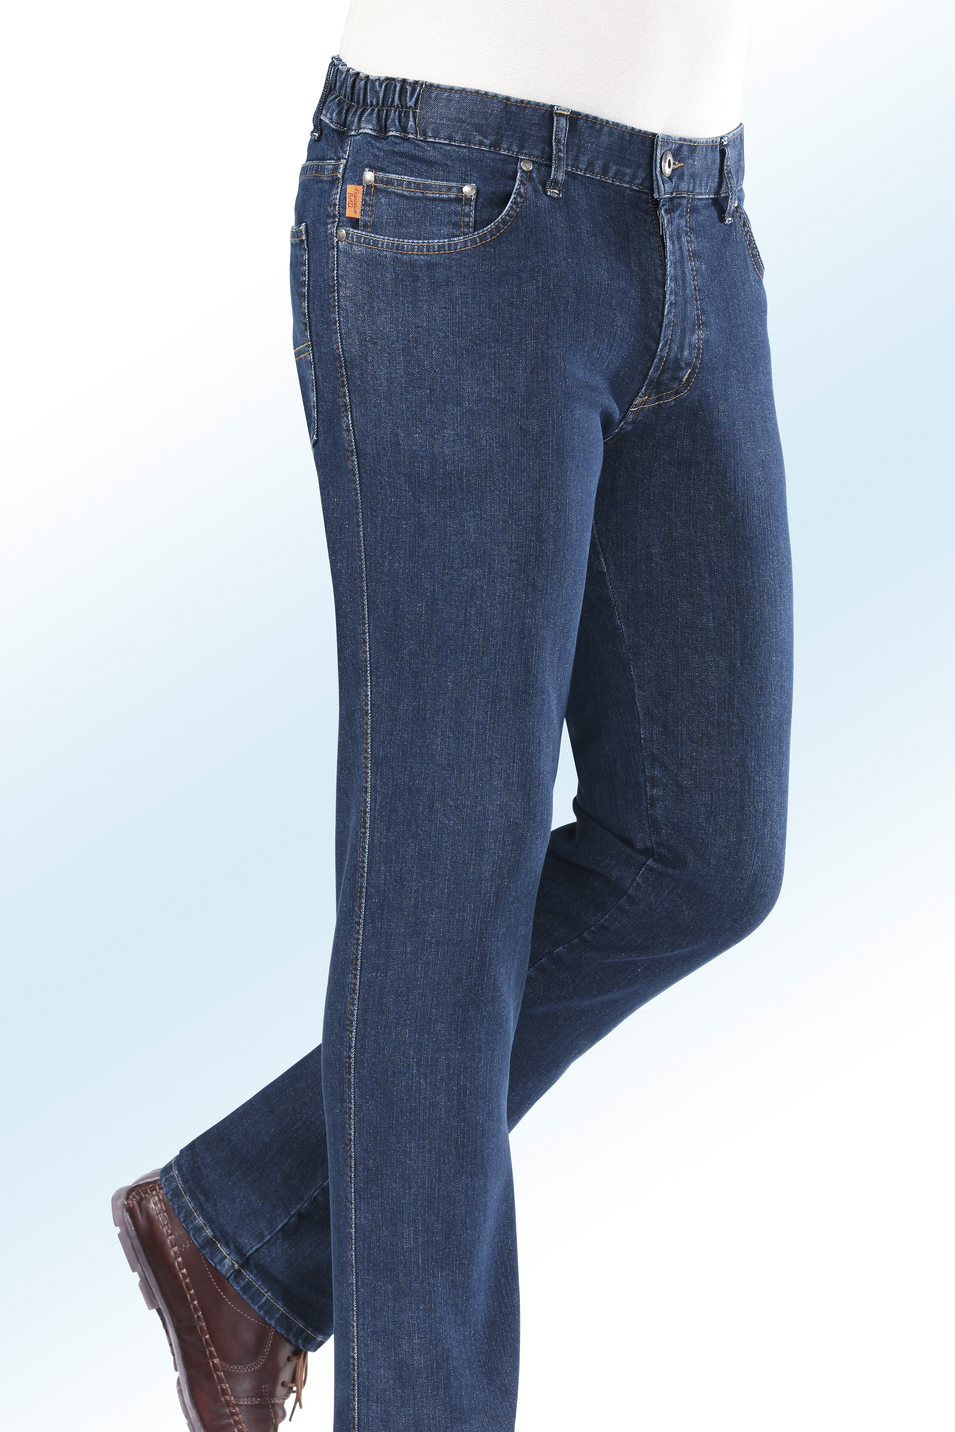 "Francesco Botti"-Jeans mit Dehnbundeinsätzen in 3 Farben, Jeansblau, Größe 110 von FRANCESCO BOTTI